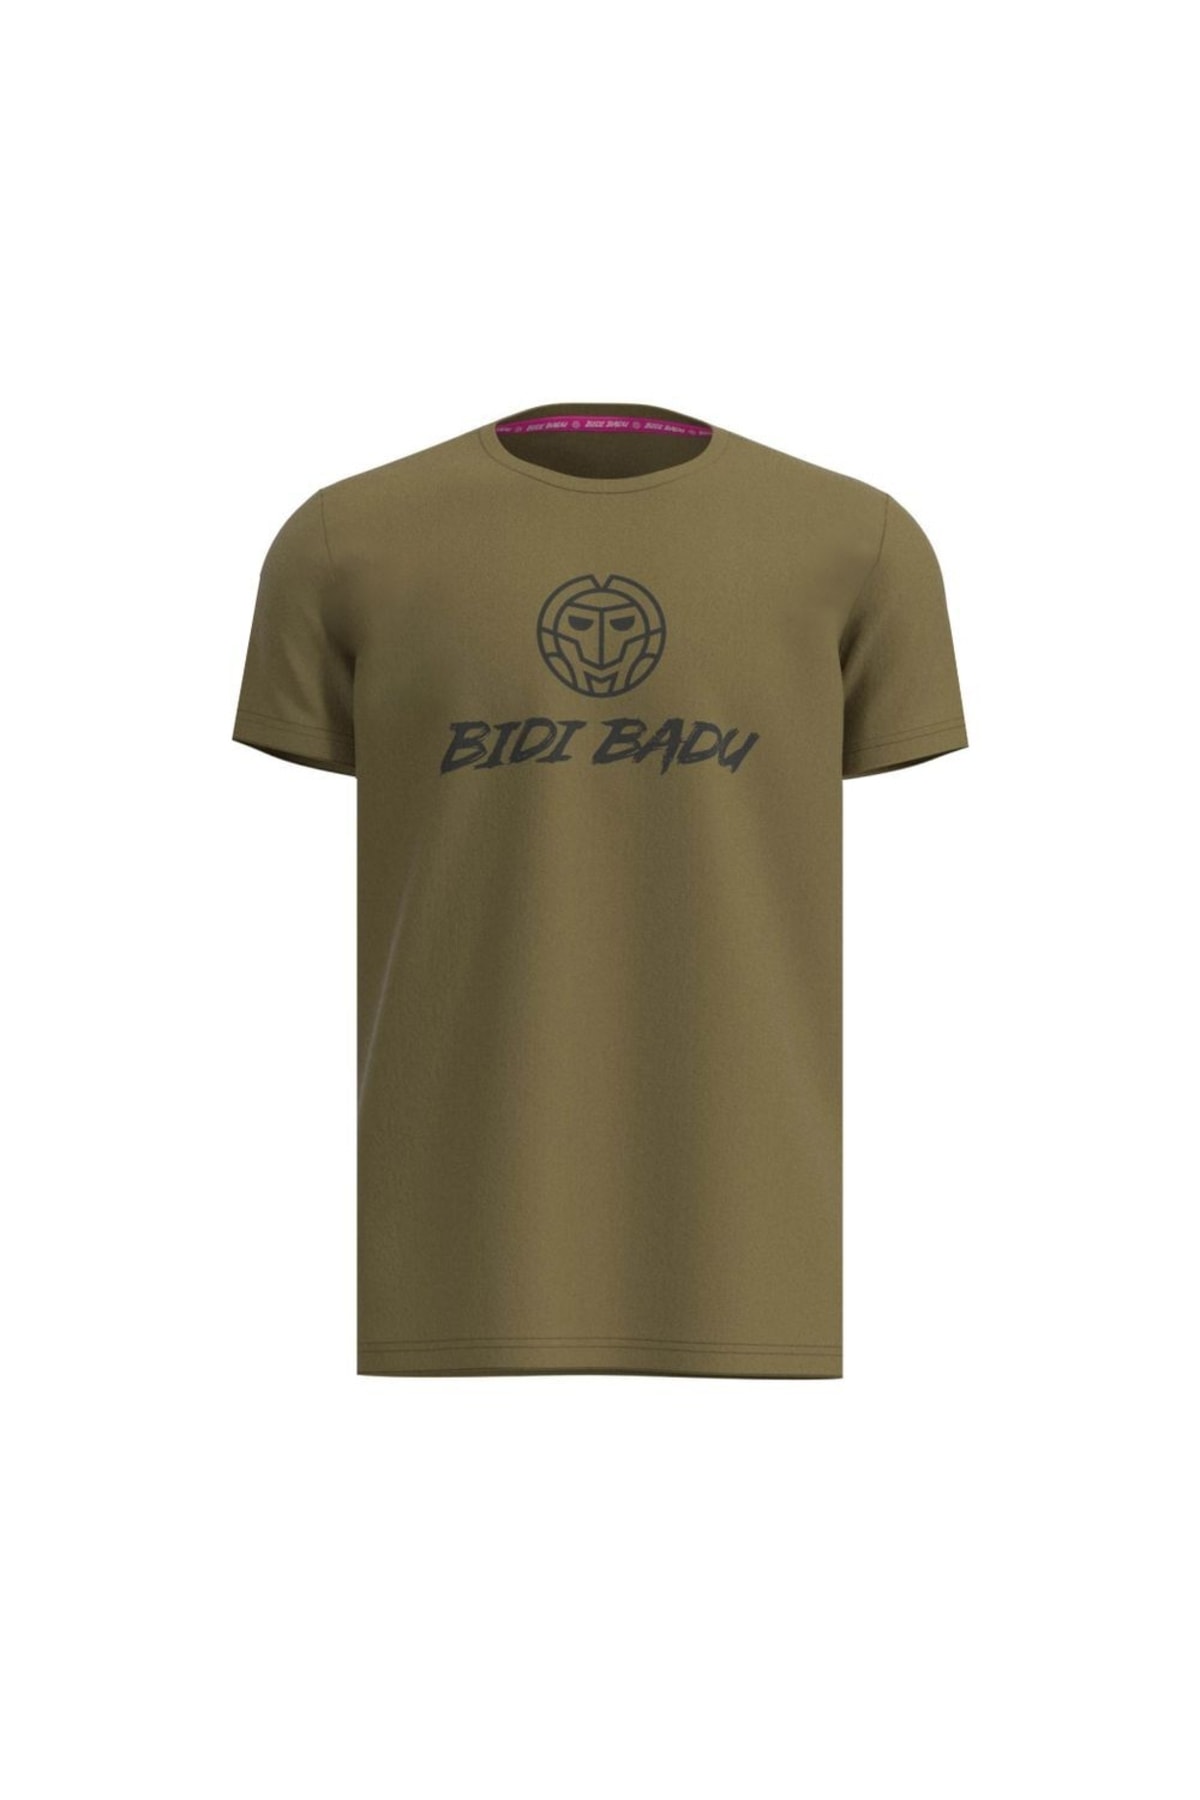 Bidi Badu T-Shirt Khaki Regular Fit Fast ausverkauft